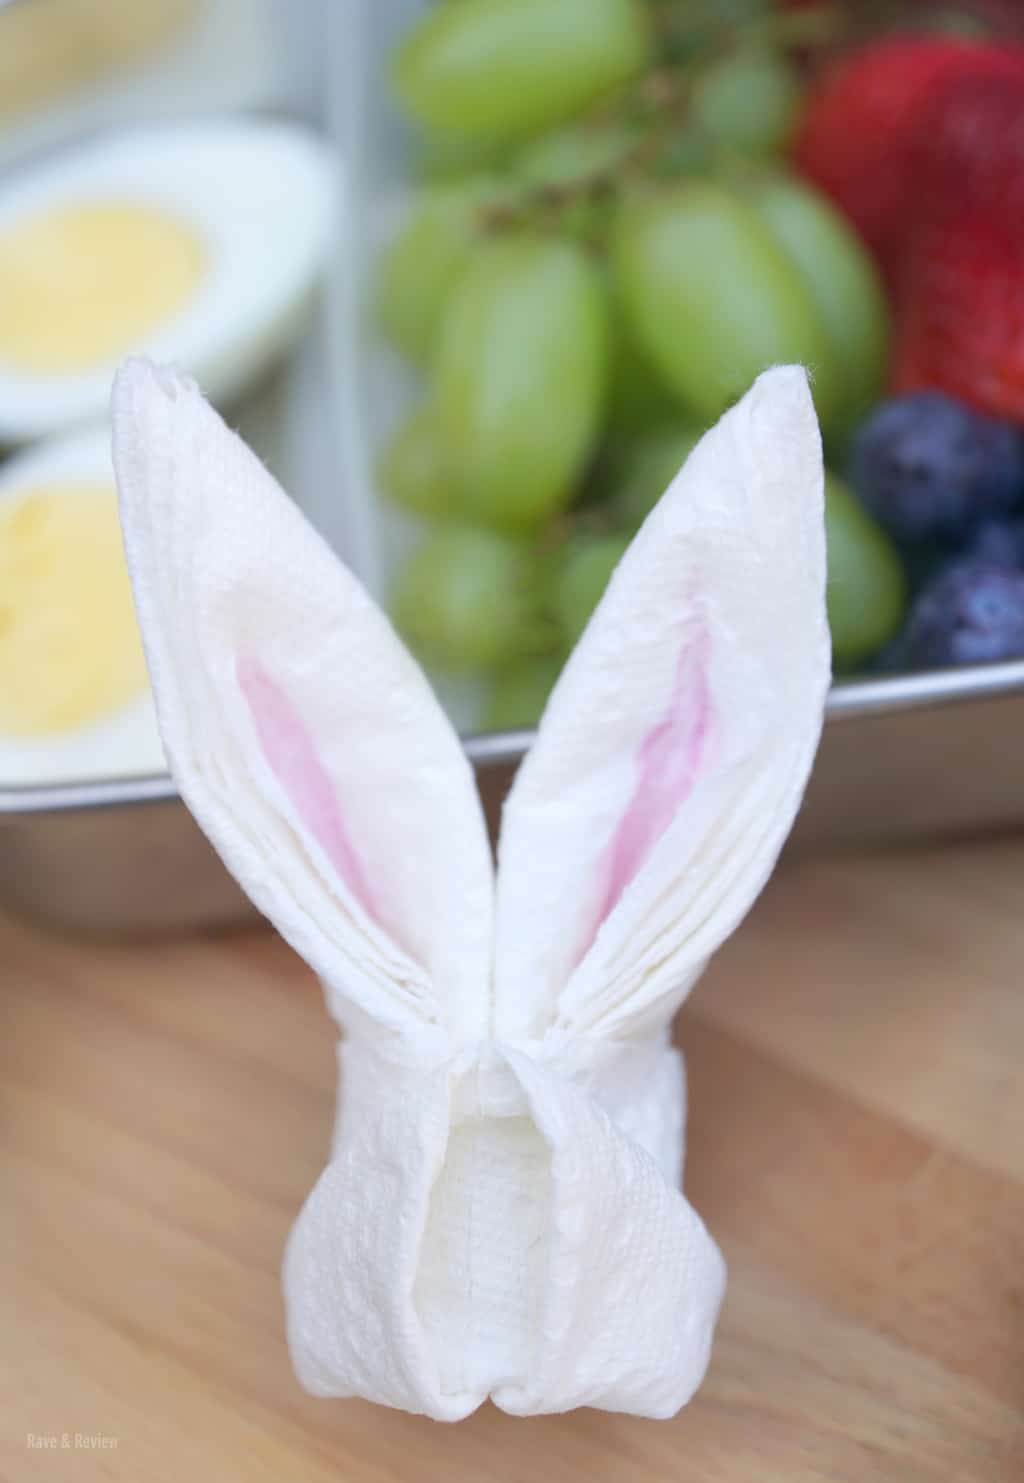 Brawny paper towel origami bunny